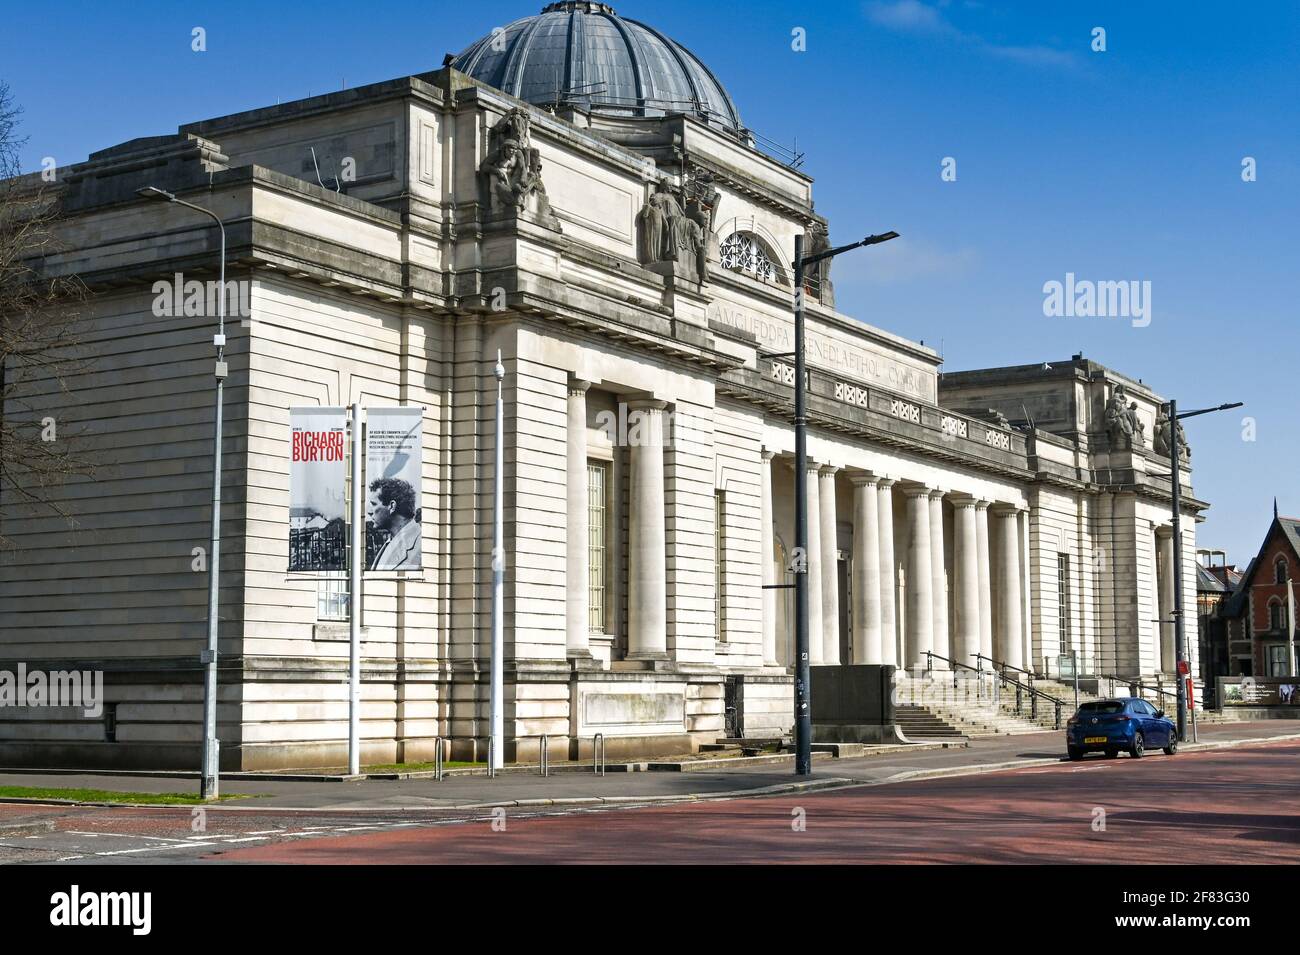 Cardiff, pays de Galles - avril 2021 : vue extérieure du Musée national du pays de Galles dans le centre-ville de Cardiff. Banque D'Images